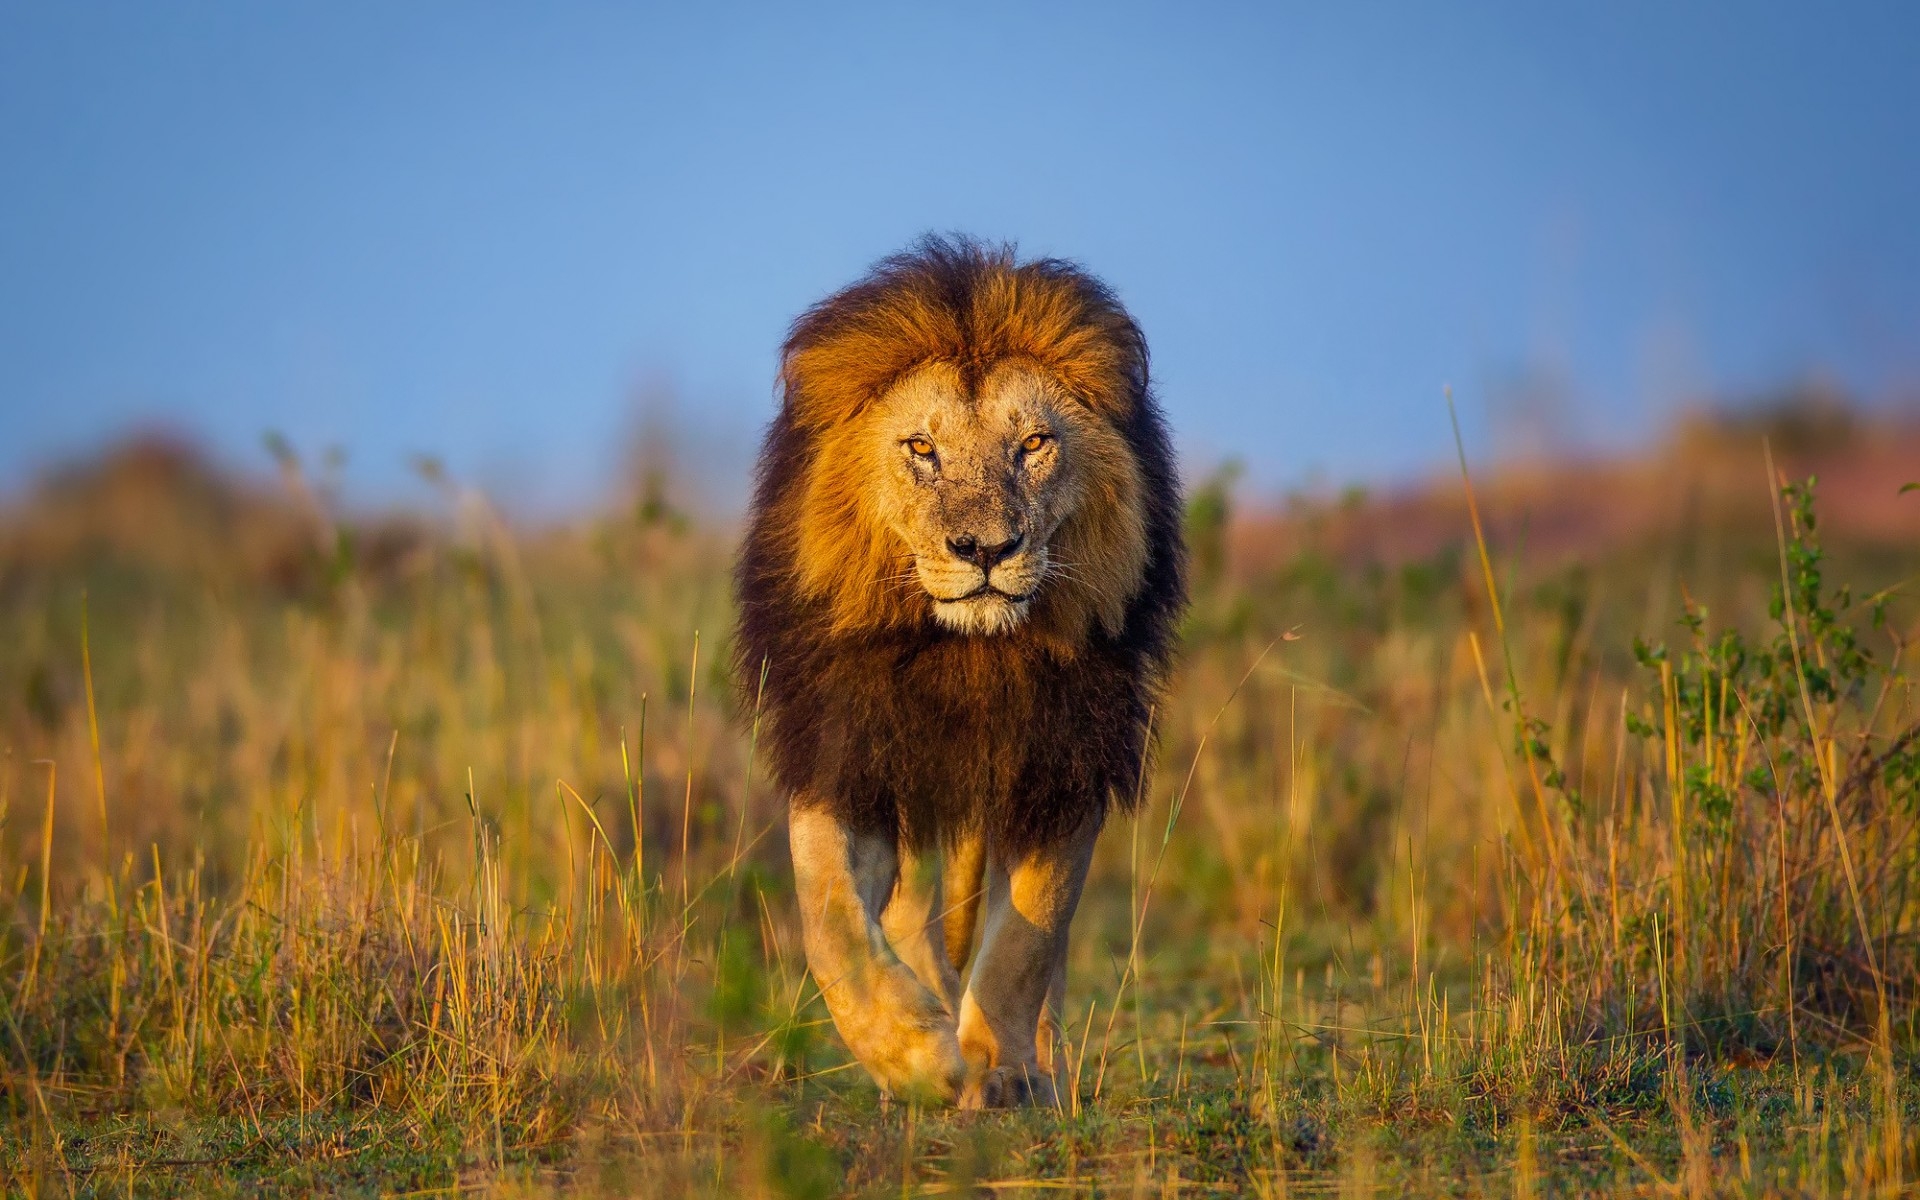 Hình nền sư tử trong thiên nhiên hoang dã đẹp nhất thế giới